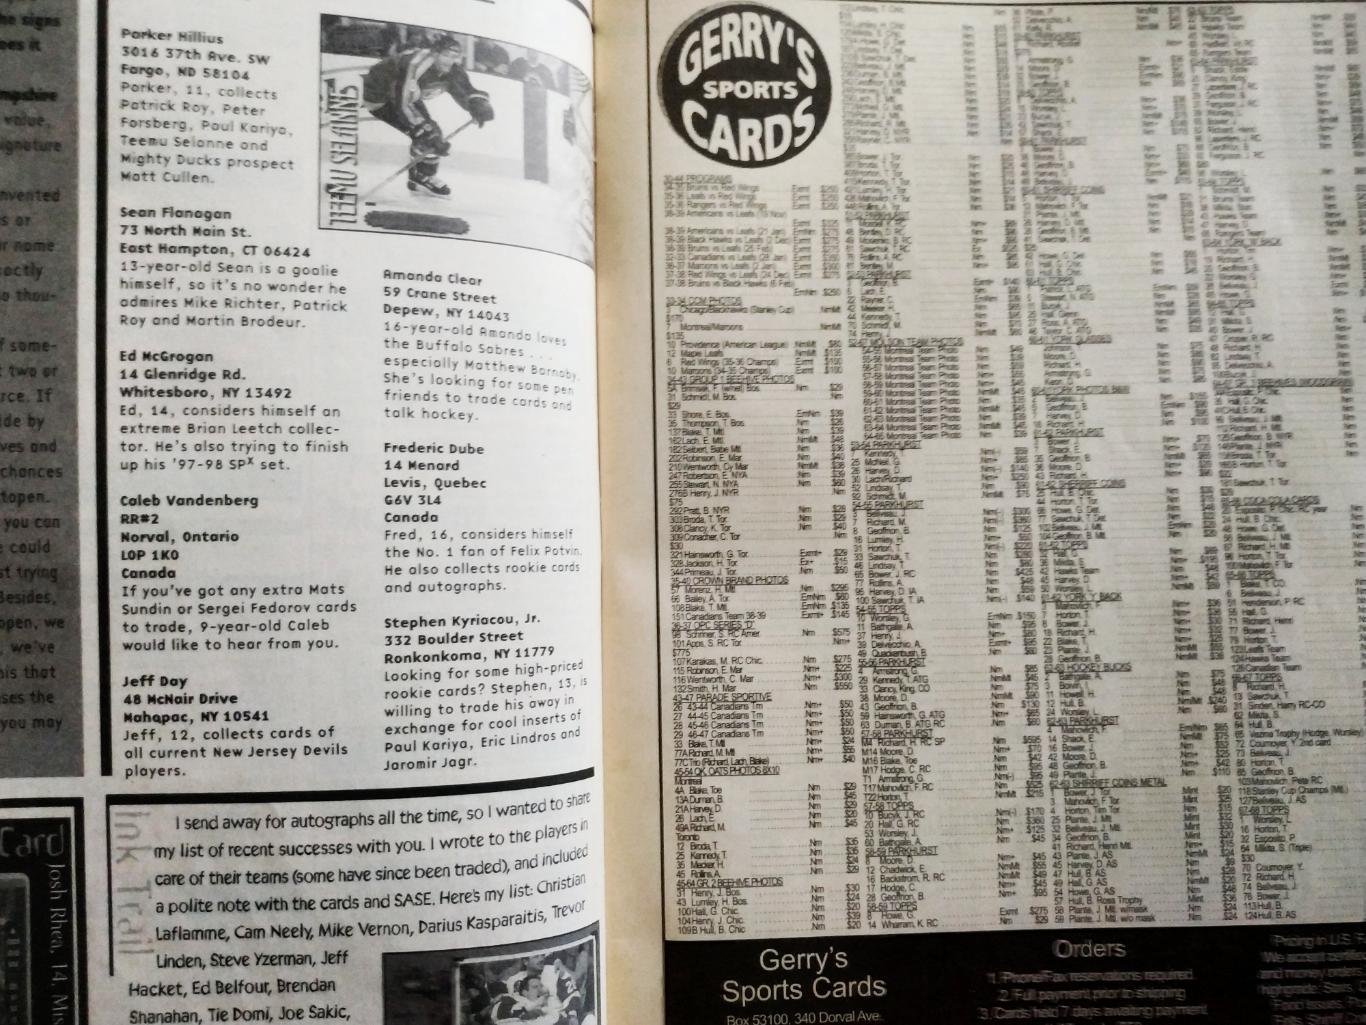 ЖУРНАЛ ЕЖЕМЕСЯЧНИК ХОККИ БЭККЕТ НХЛ NHL 1998 OCT BECKETT HOCKEY MAGAZINE #96 3